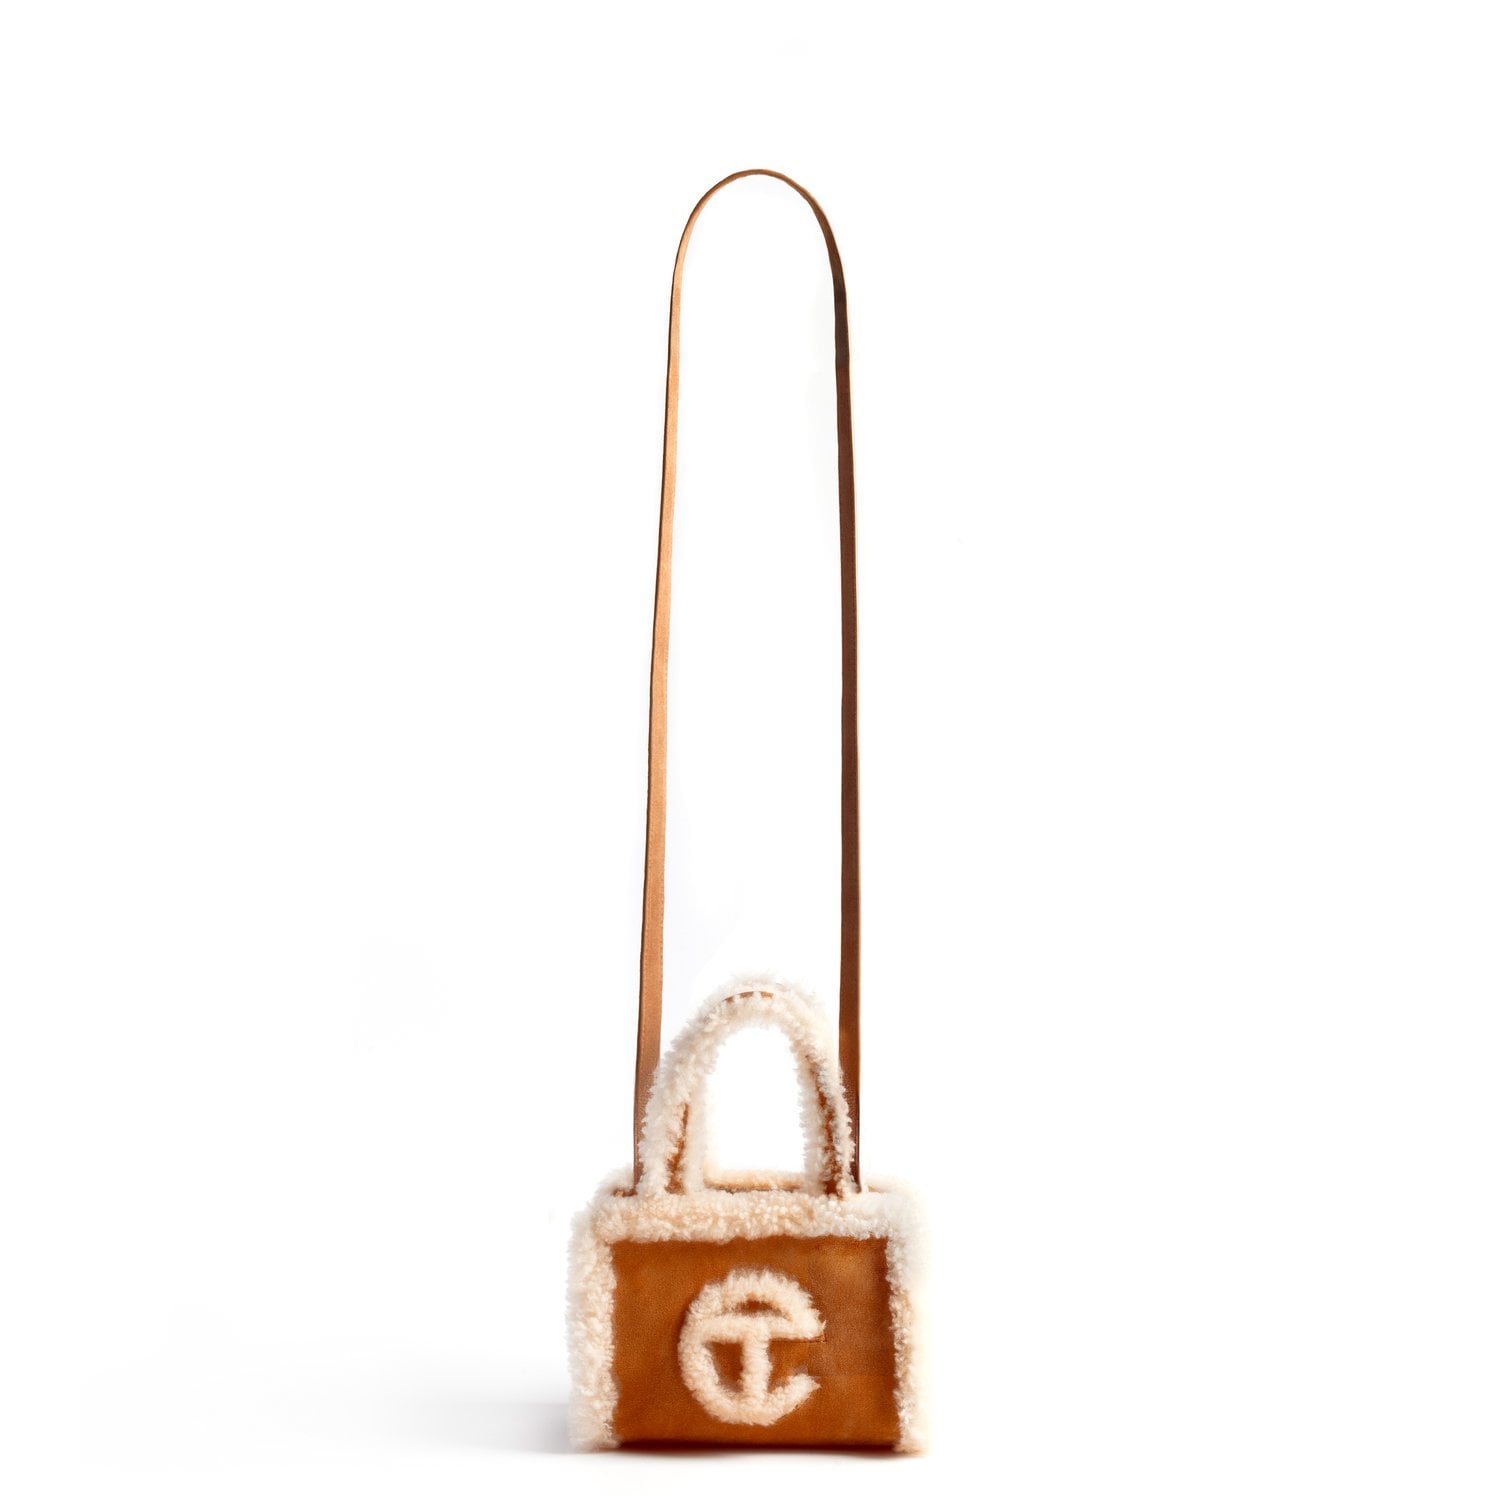 How to Preorder Telfar x UGG's Shopper Bags